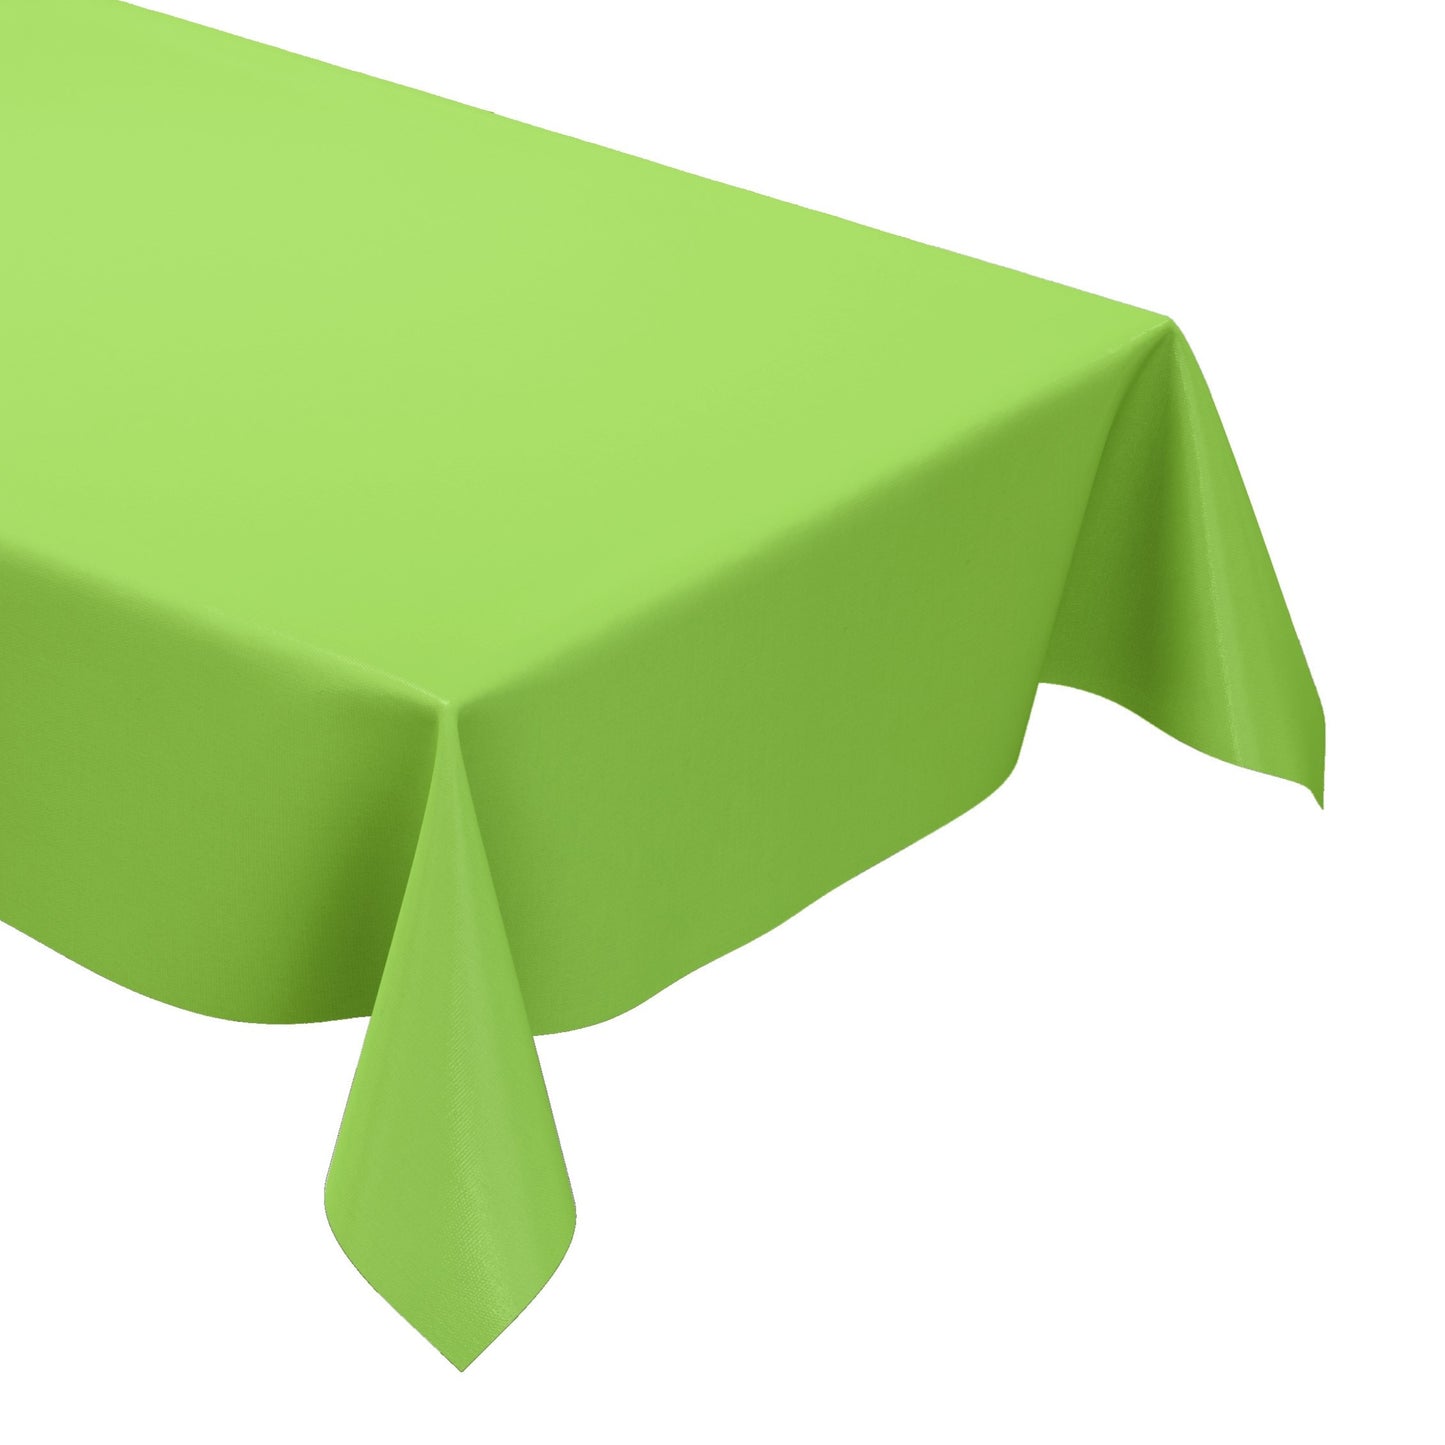 KEVKUS Wachstuch Tischdecke unifarben 375 hellgrün einfarbig wählbar in eckig, rund und oval -